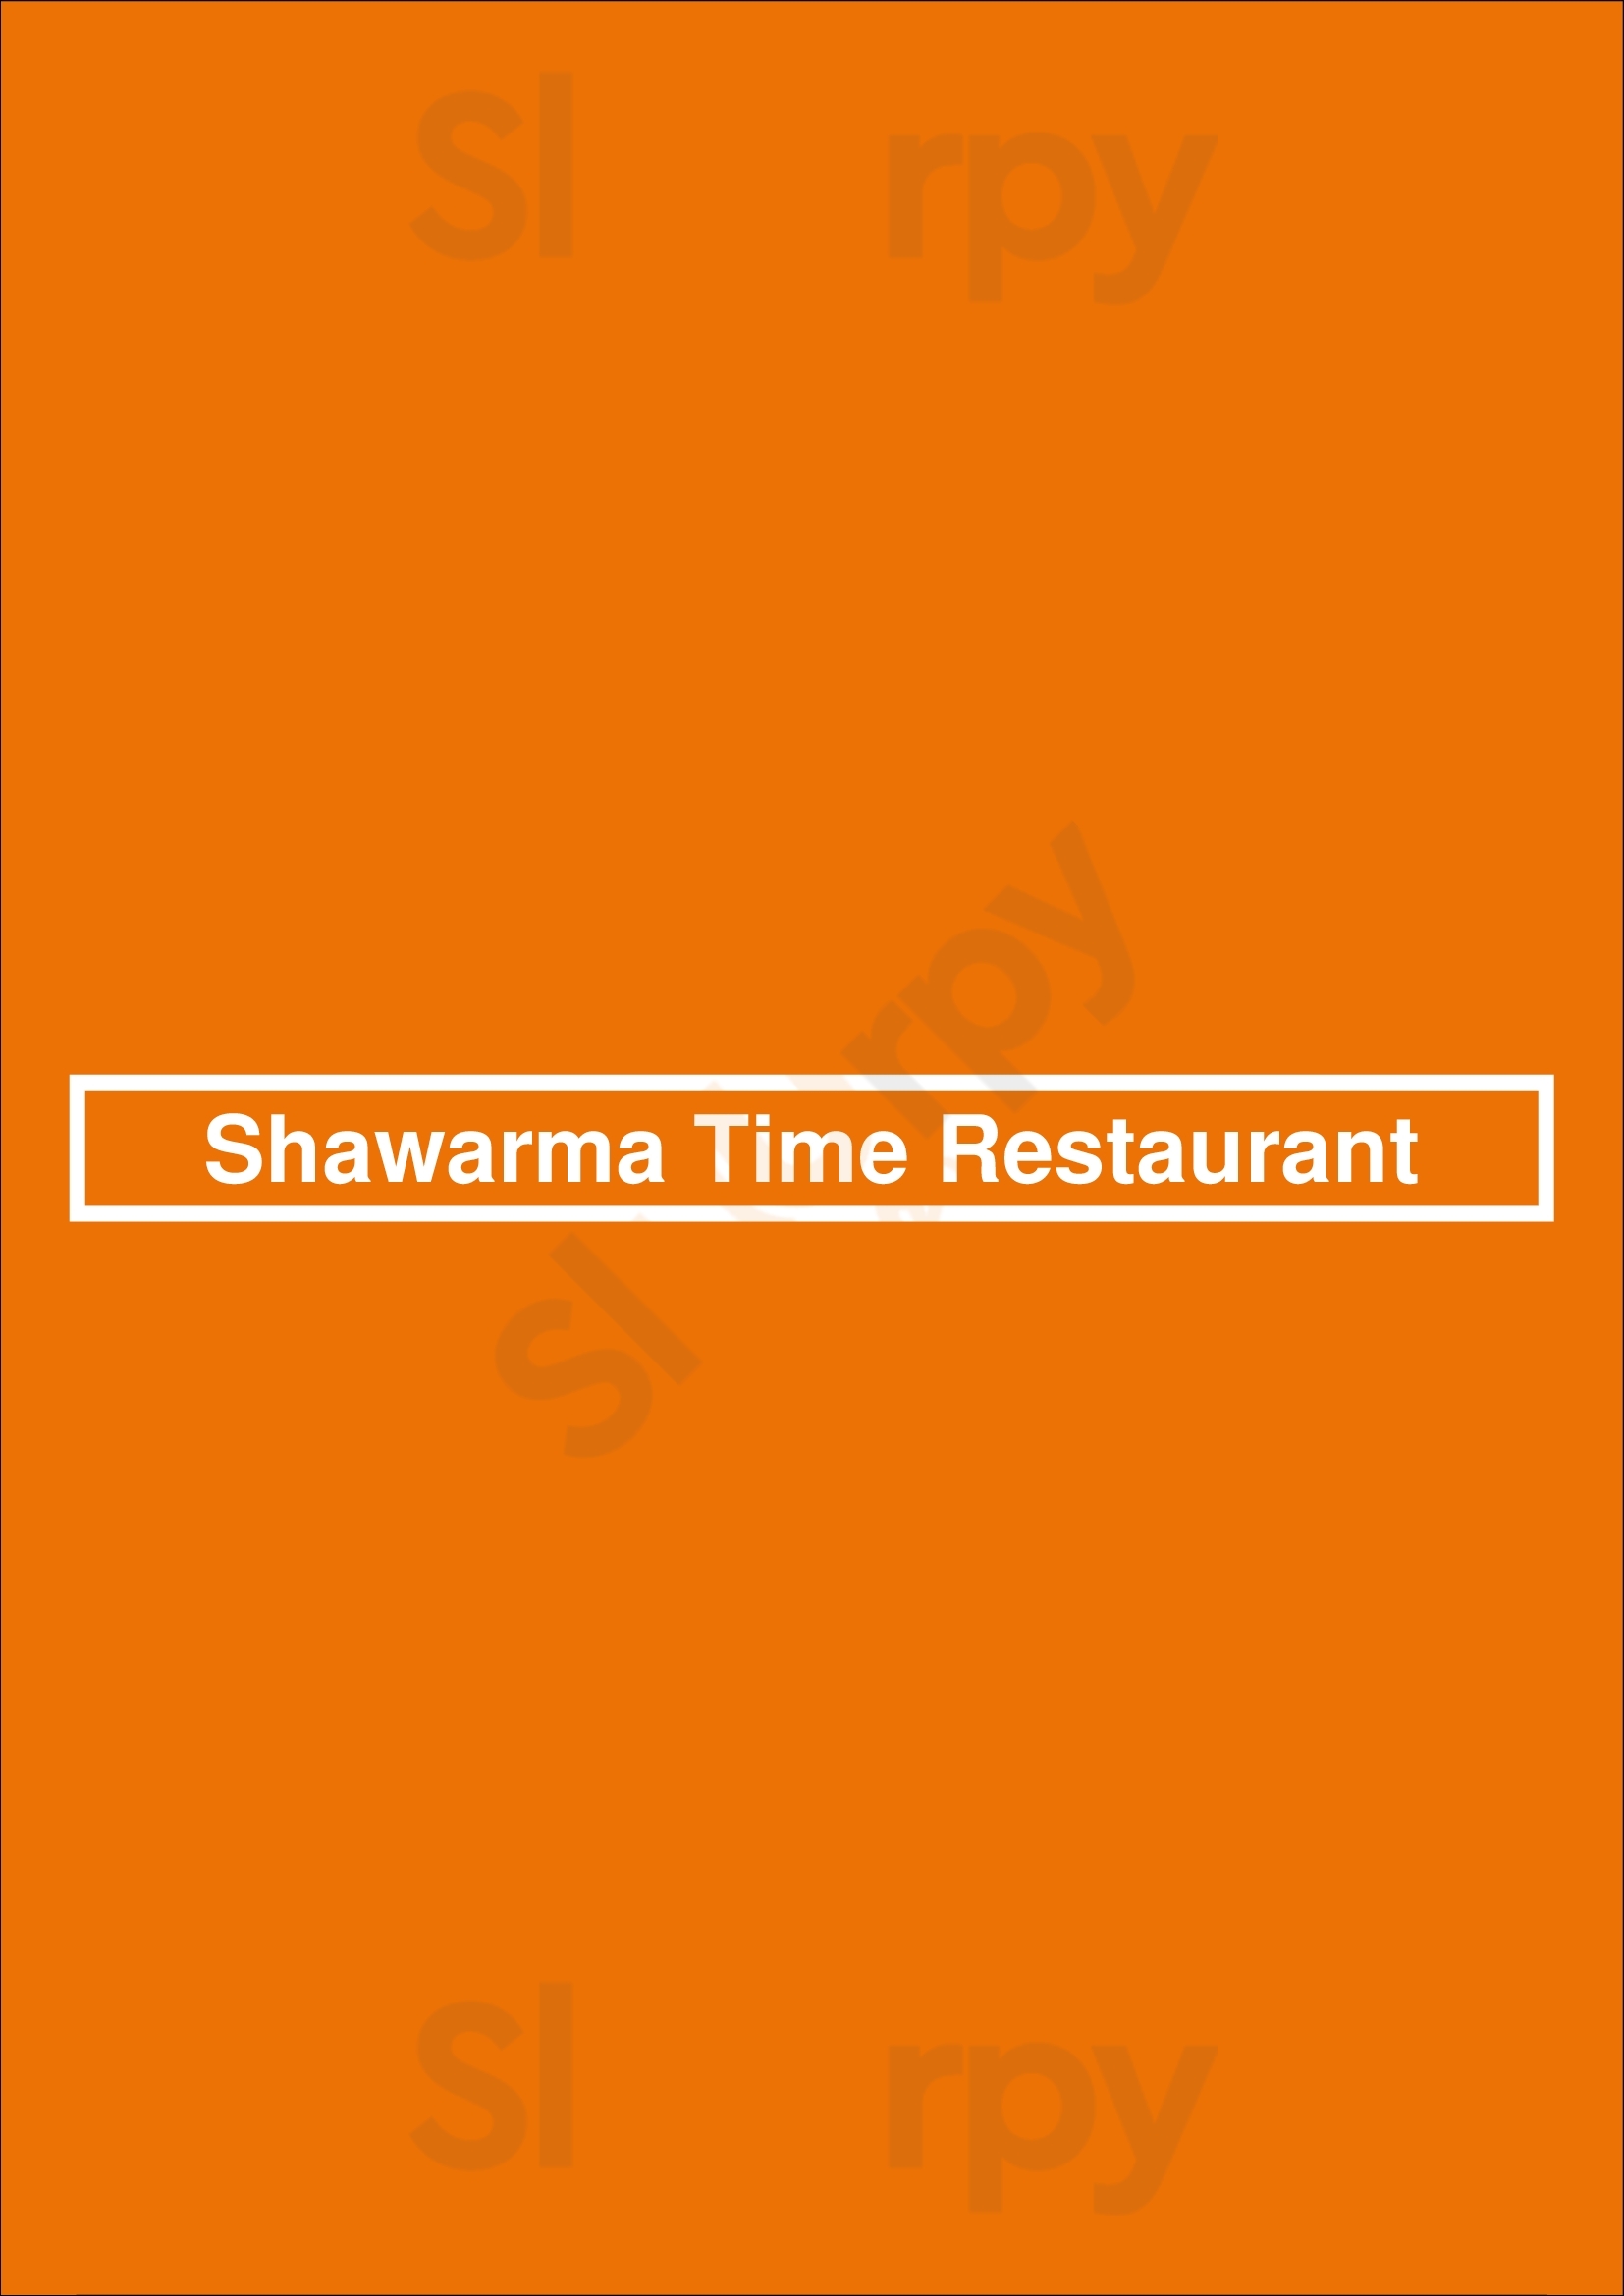 Shawarma Time Restaurant Winnipeg Menu - 1